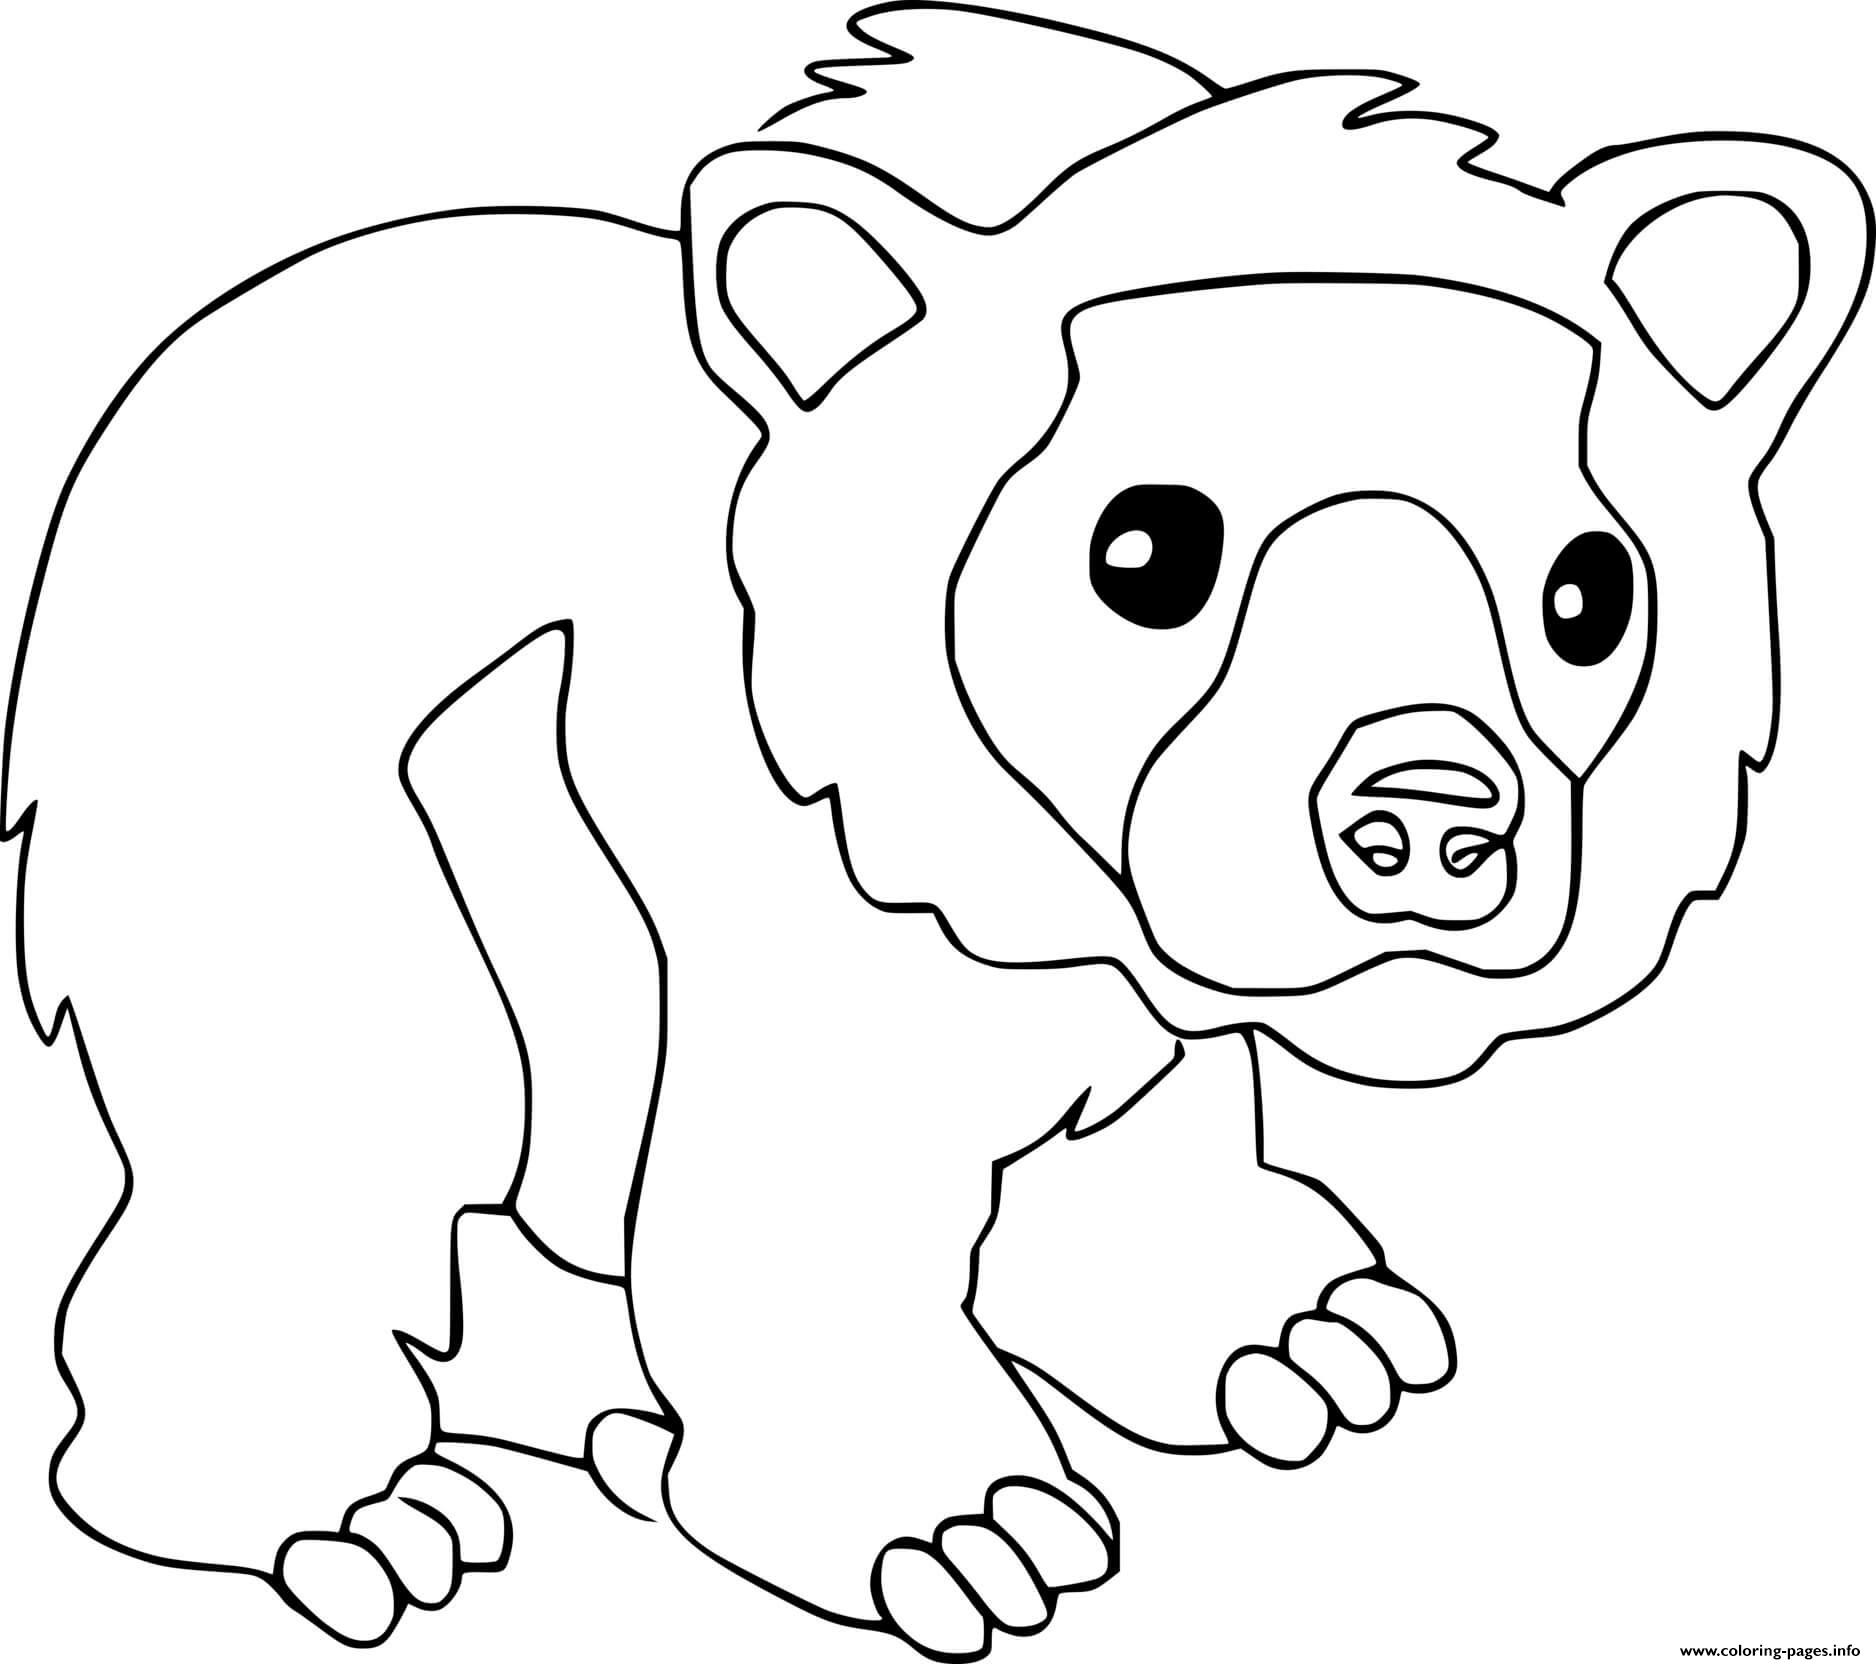 Распечатка медведя. Медведь раскраска. Медведь раскраска для детей. Медвежонок раскраска для детей. Медведь для раскрашивания детям.